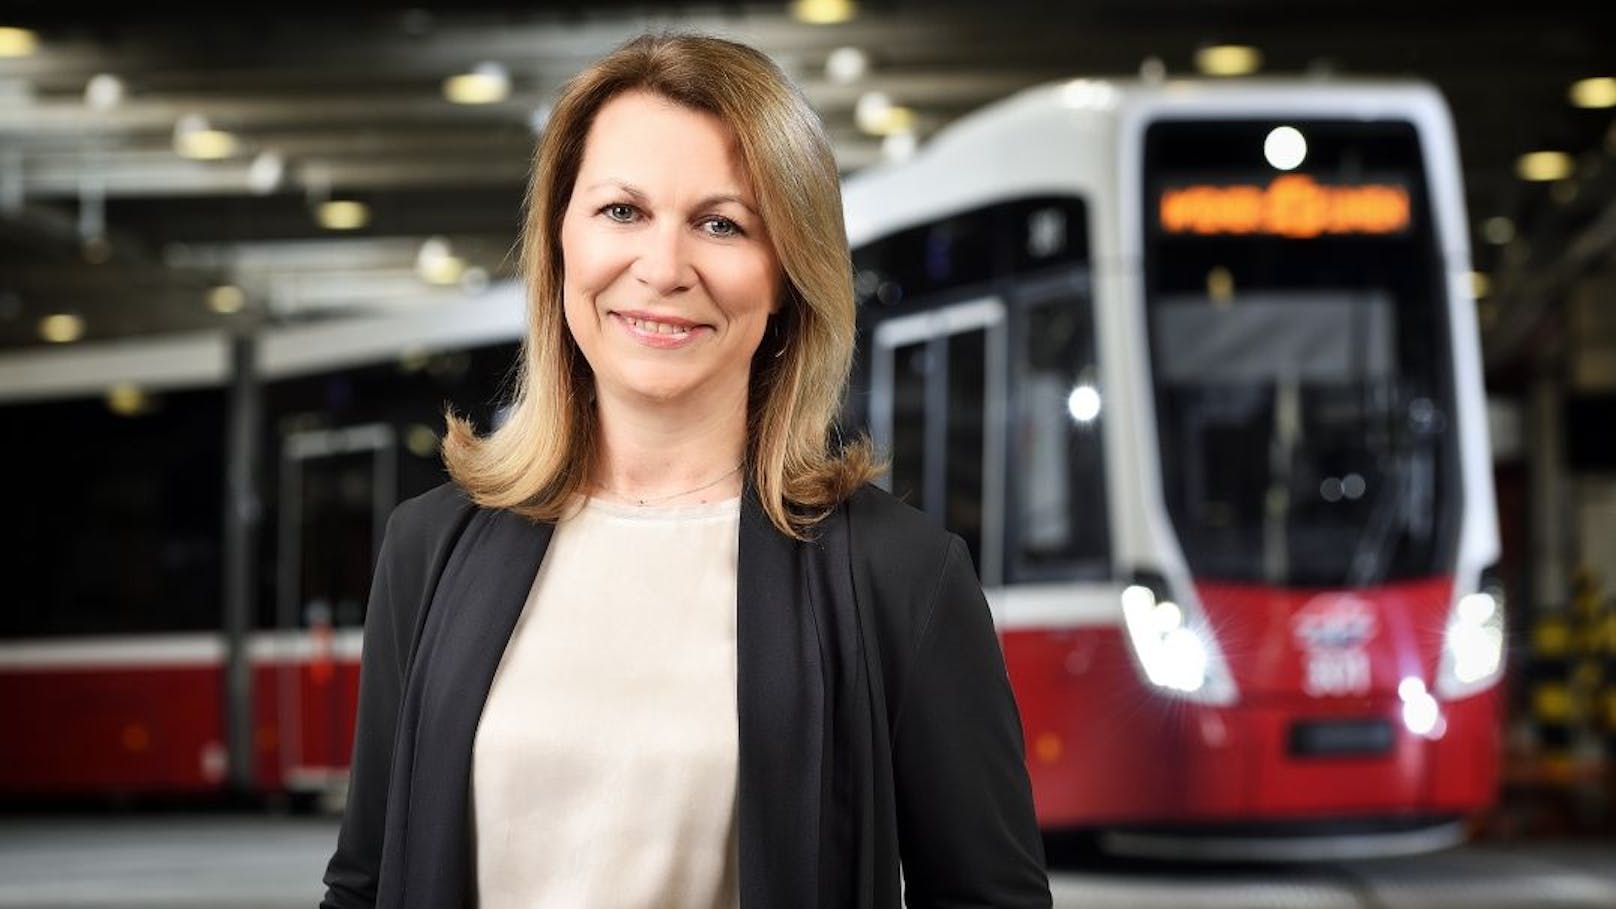 Alexandra Reinagl, Geschäftsführerin für Personal, Finanzen und Recht, vor einer Straßenbahn des Typs Flexity.